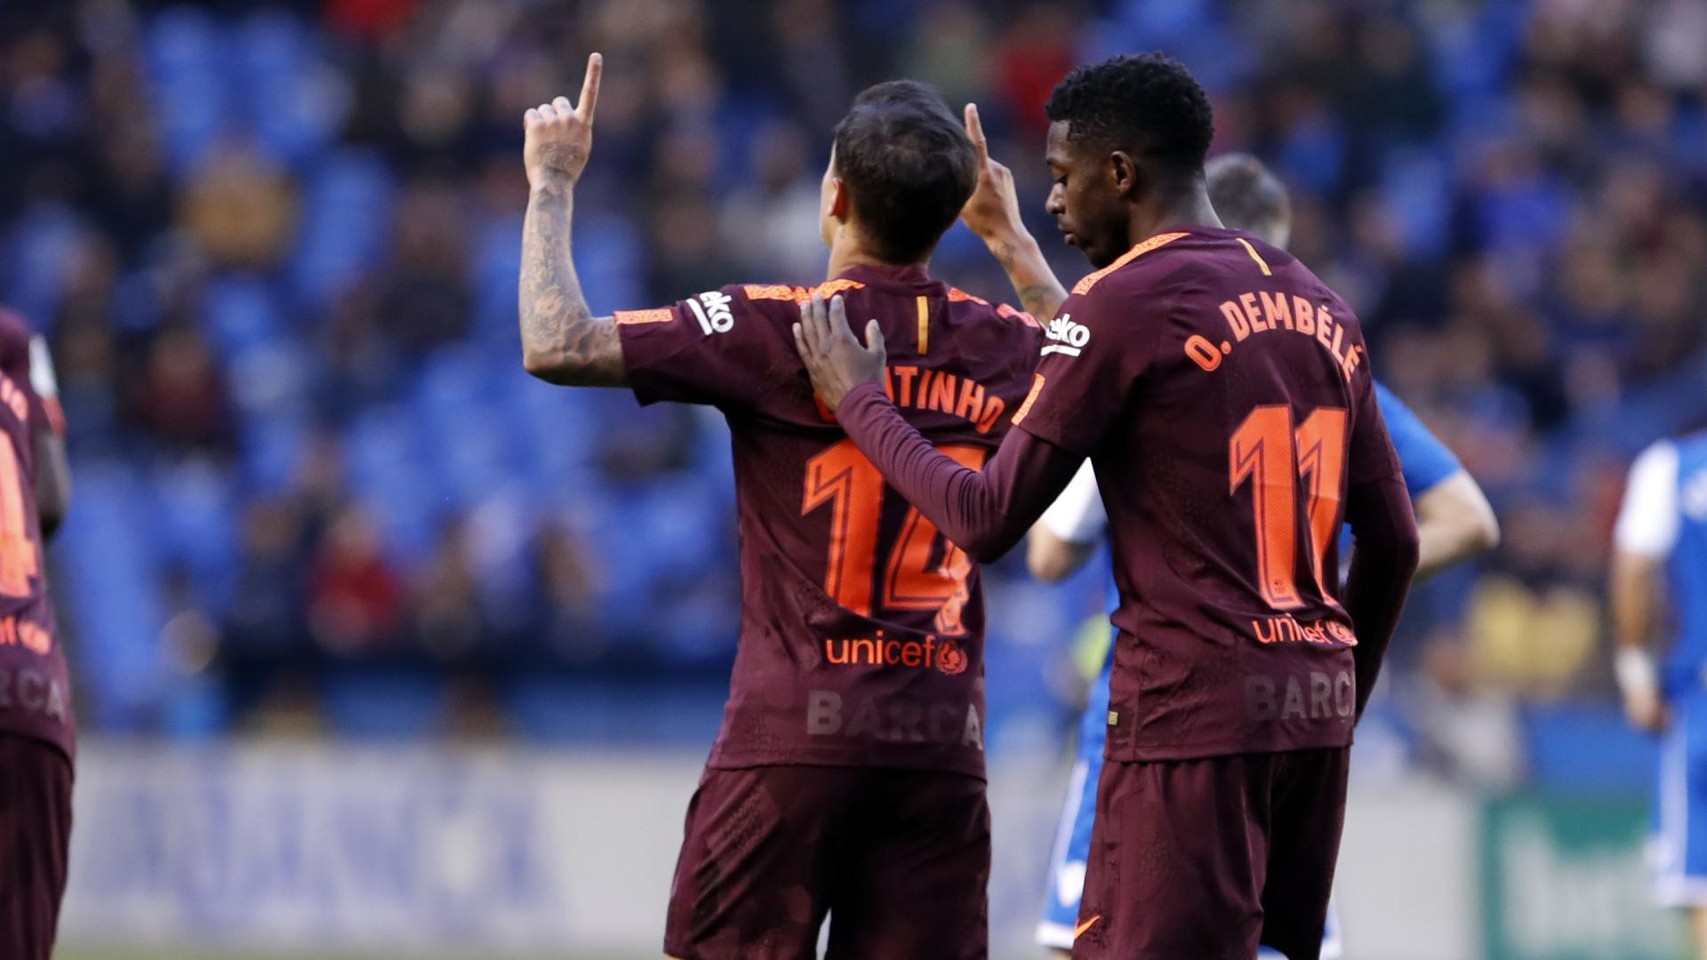 صور مباراة : ديبورتيفو لاكورنيا - برشلونة 2-4 ( 29-04-2018 )  80787945